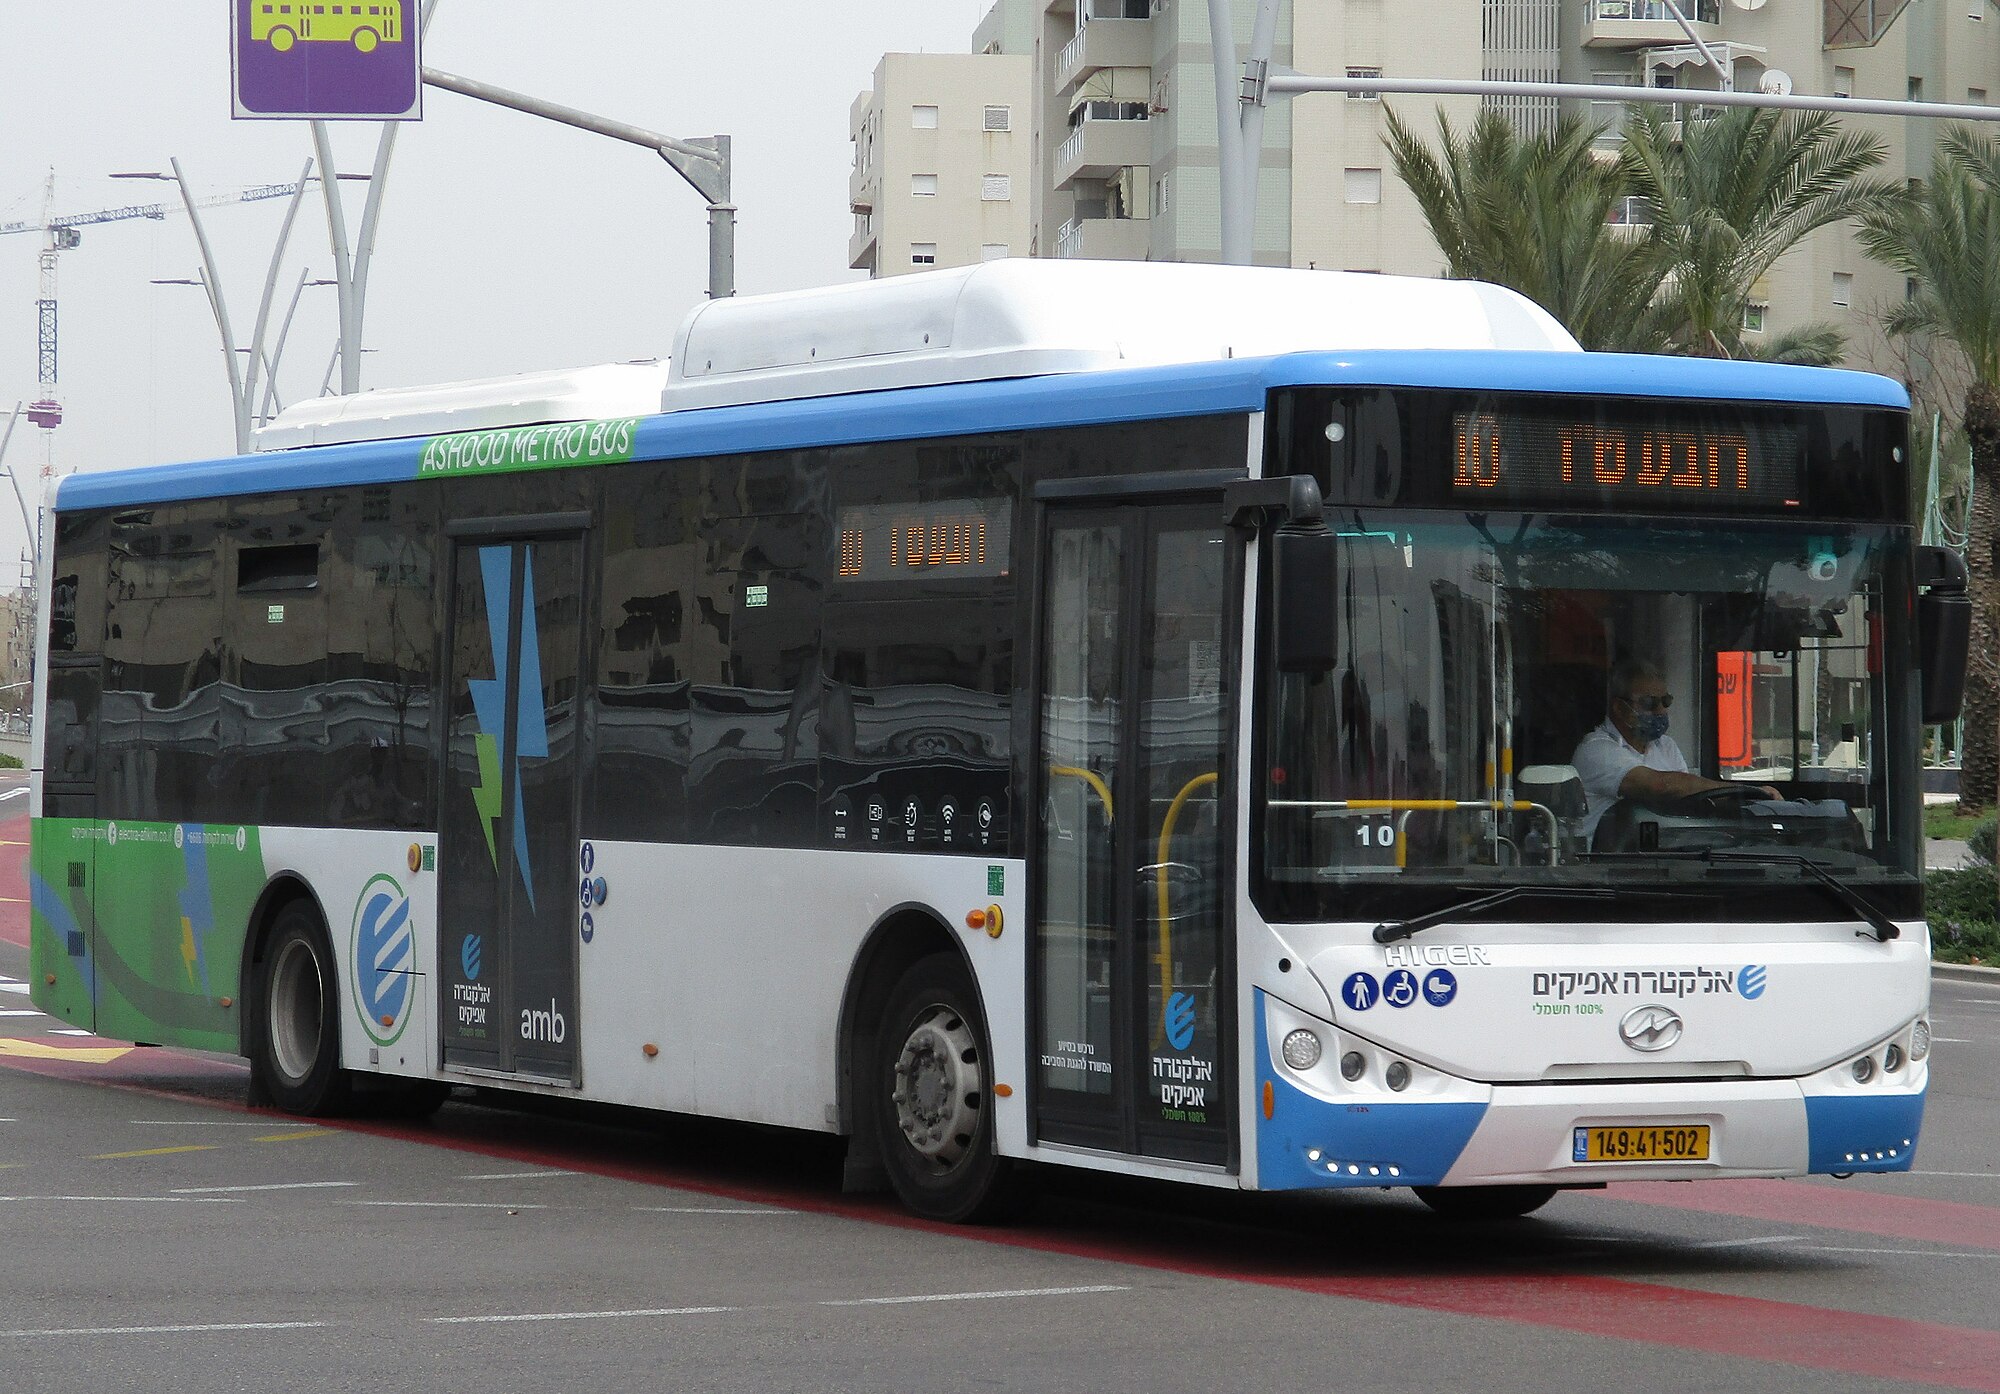 Electra Afikim es el operador de transporte público dentro del Grupo internacional Electra., y es una de las empresas de transporte más importantes de Israel. Foto: Yb"a stone/CC BY-SA 4.0, via Wikimedia Commons.